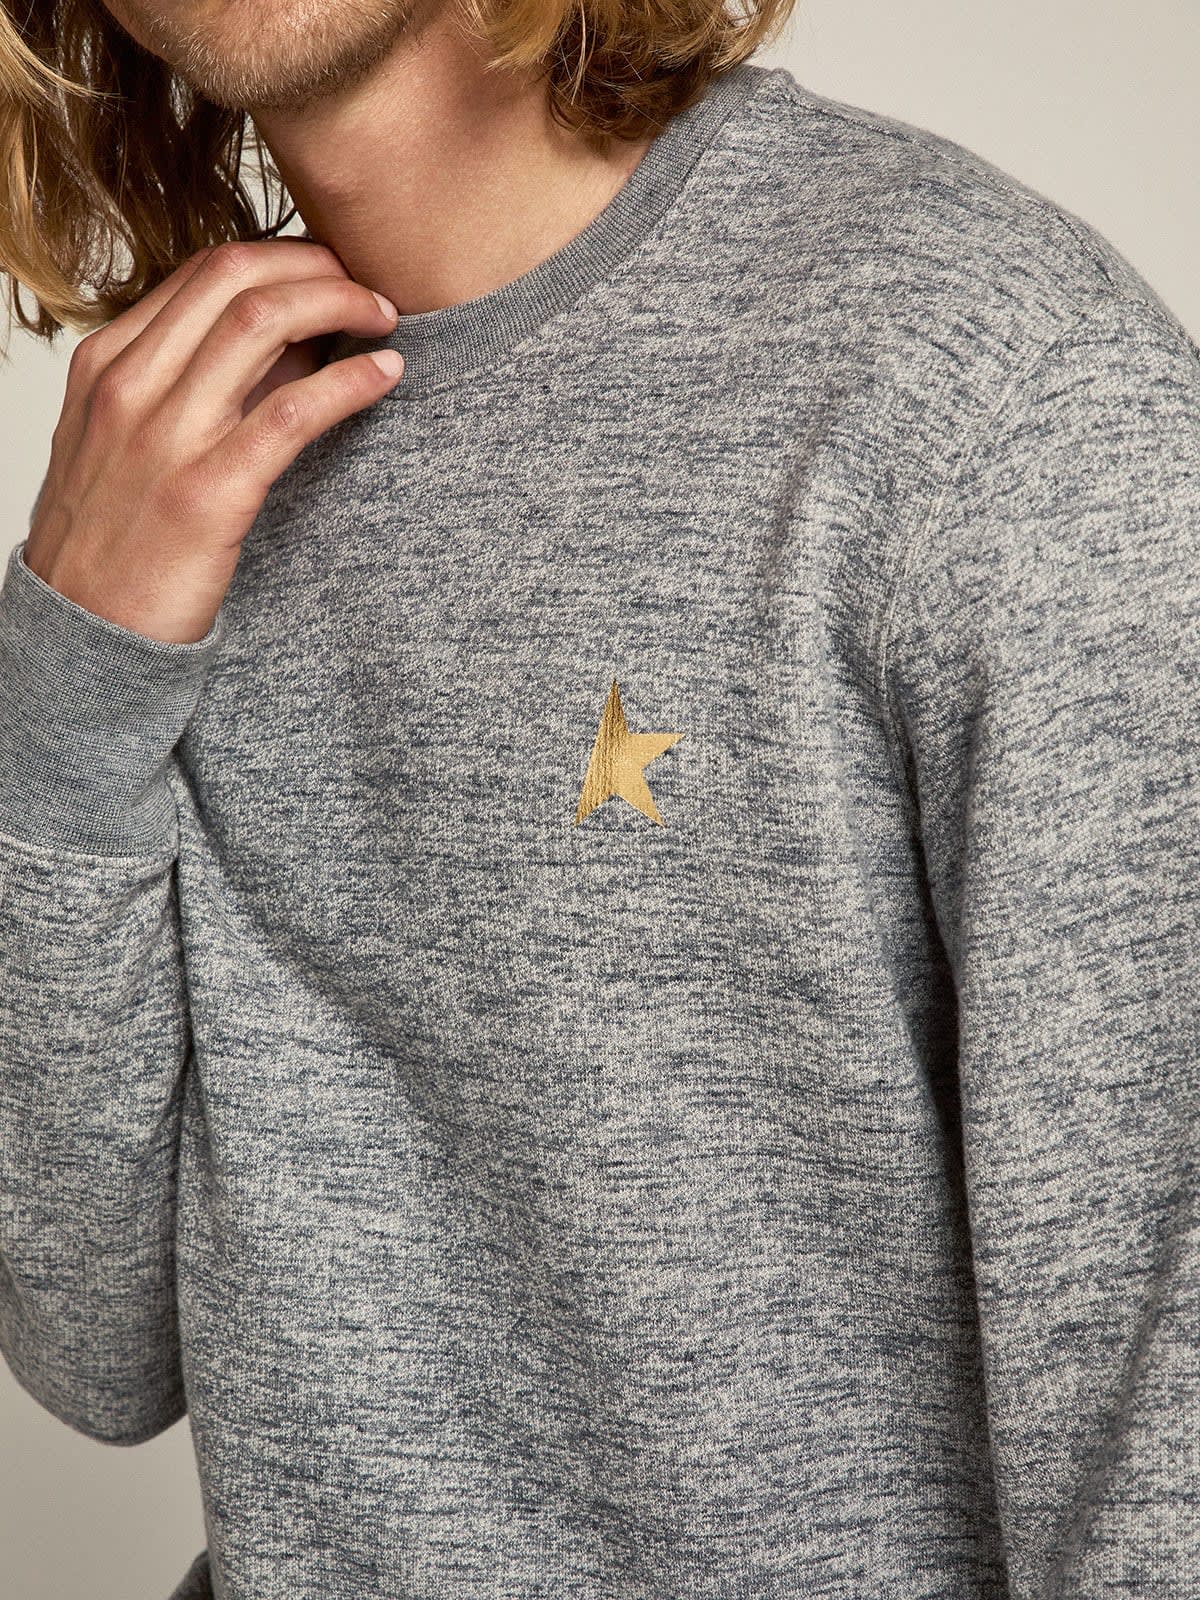 Golden Goose - Grau meliertes Baumwollsweatshirt aus der Star Collection mit goldfarbenem Kontraststern an der Vorderpartie in 